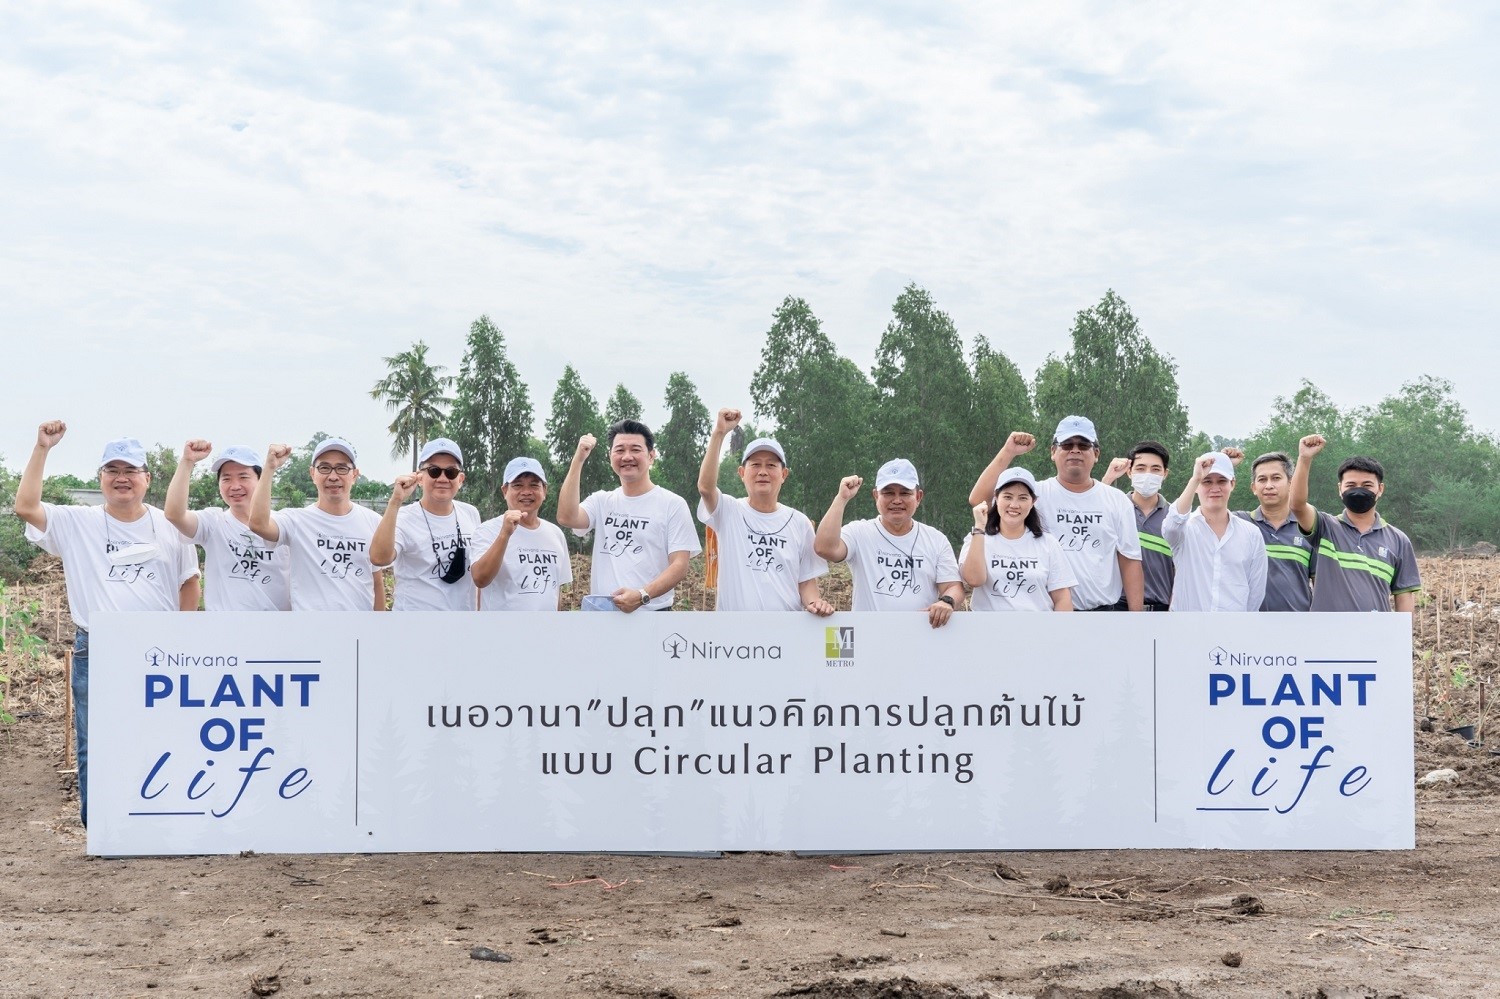 เนอวานา ส่งโครงการ เนอวานา PLANT FOR LIFE "ปลุก" ความคิดสร้างสรรค์และความรับผิดชอบทางธุรกิจผ่านแนวคิดการปลูกต้นไม้แบบ Circular Planting